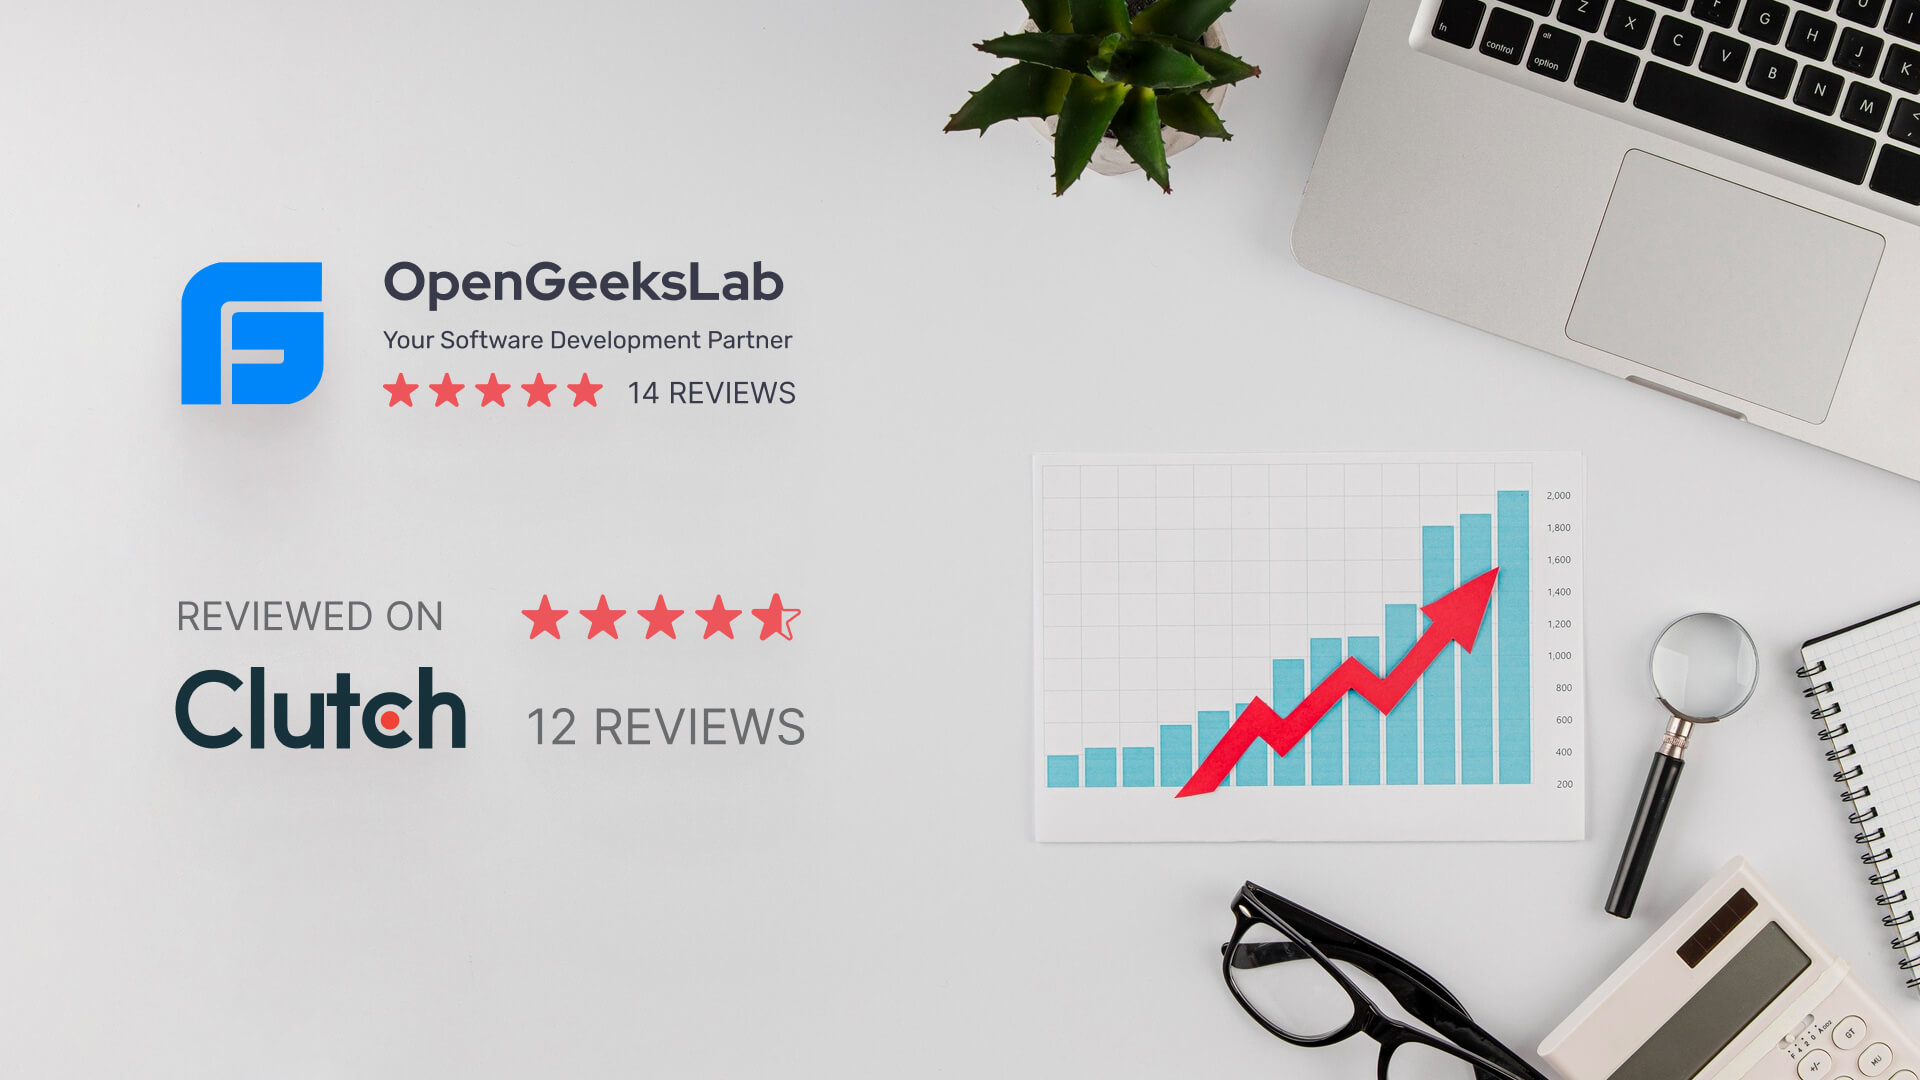 OpenGeeksLab Is Making Waves in The App Development Industry